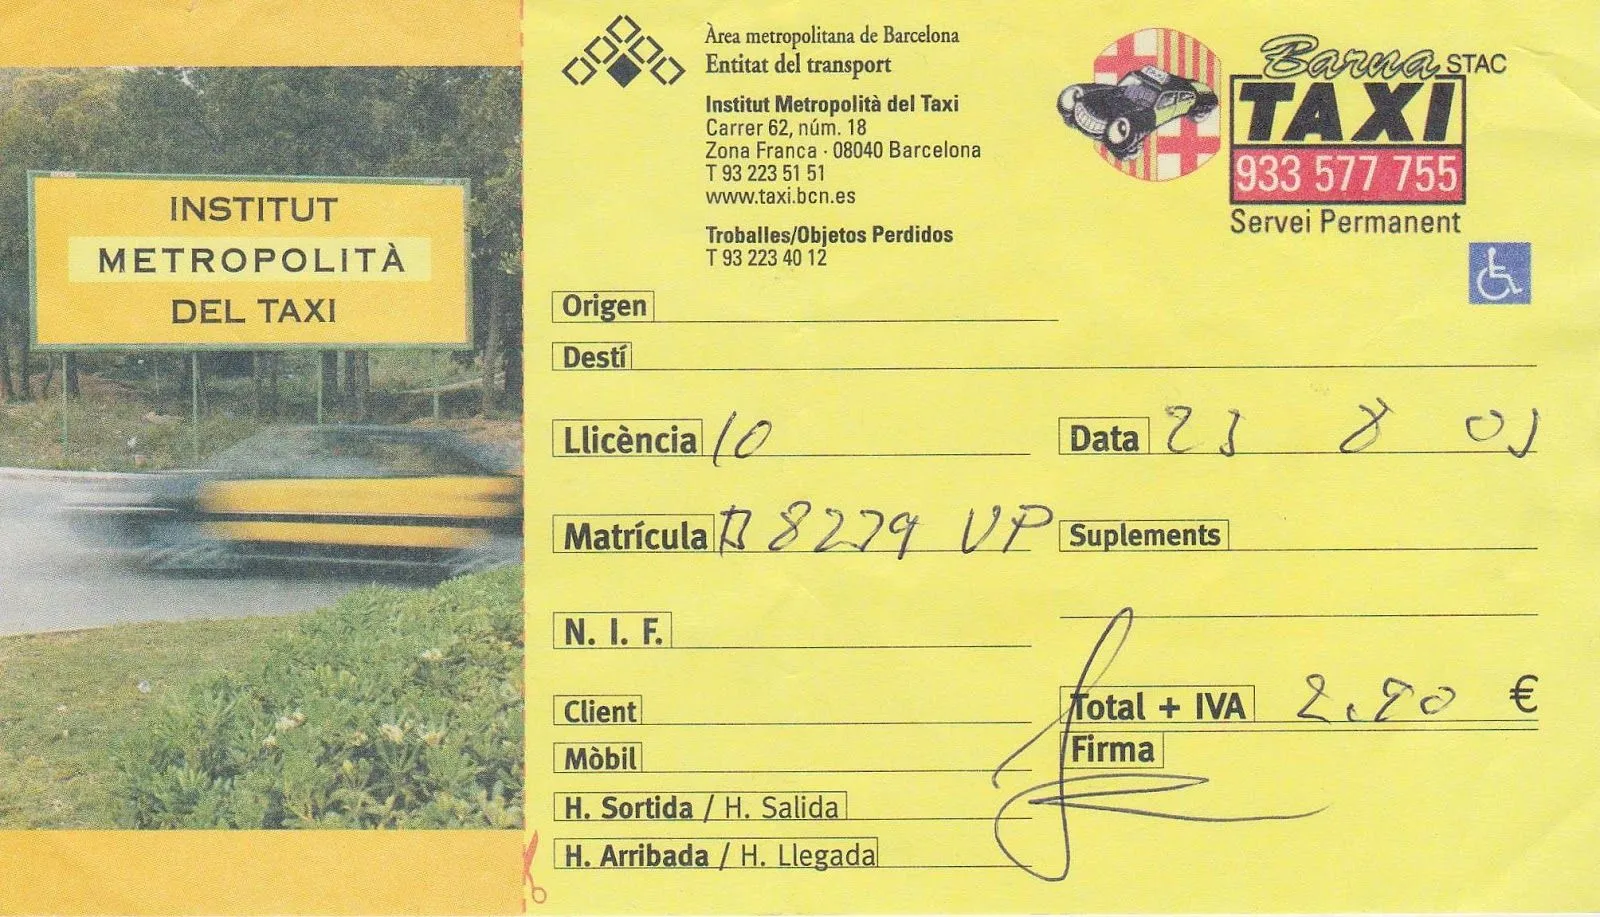 The traveler's drawer: BARCELONA. 8 recibos de taxis / 8 taxi receipts  (2003)